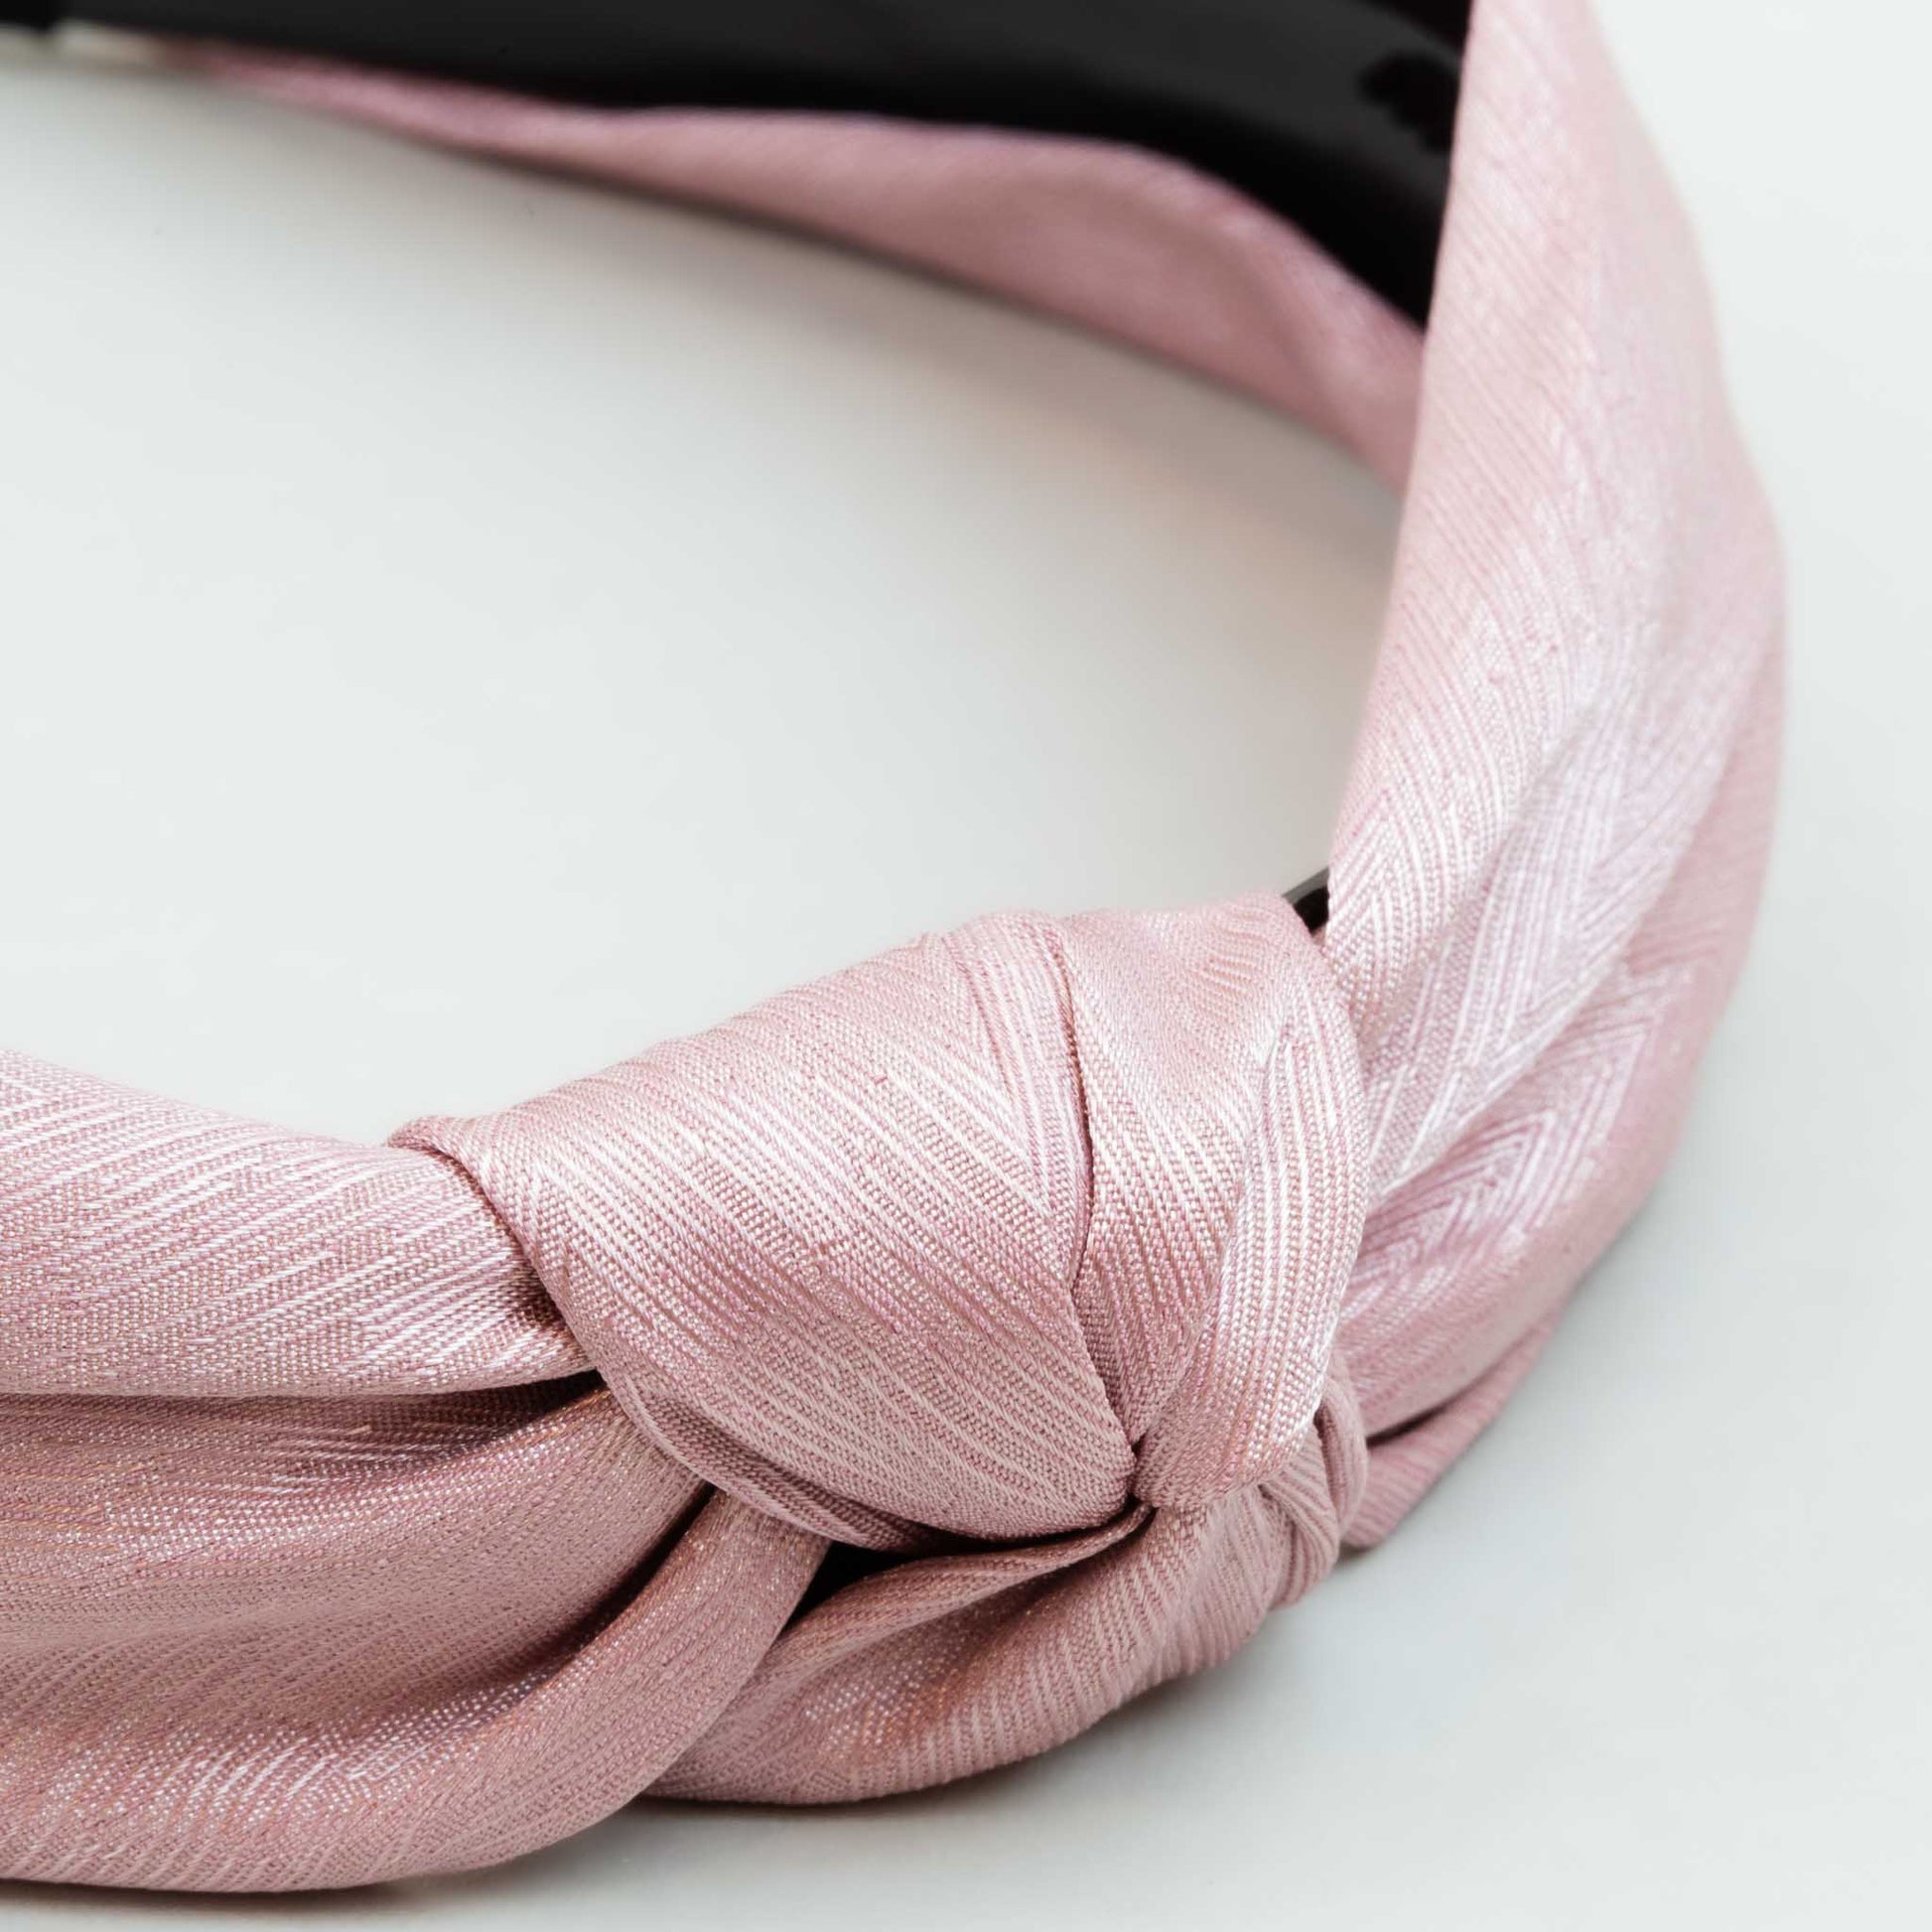 Cordelută de păr lată cu nod și material textil cu dungi fine - Roz